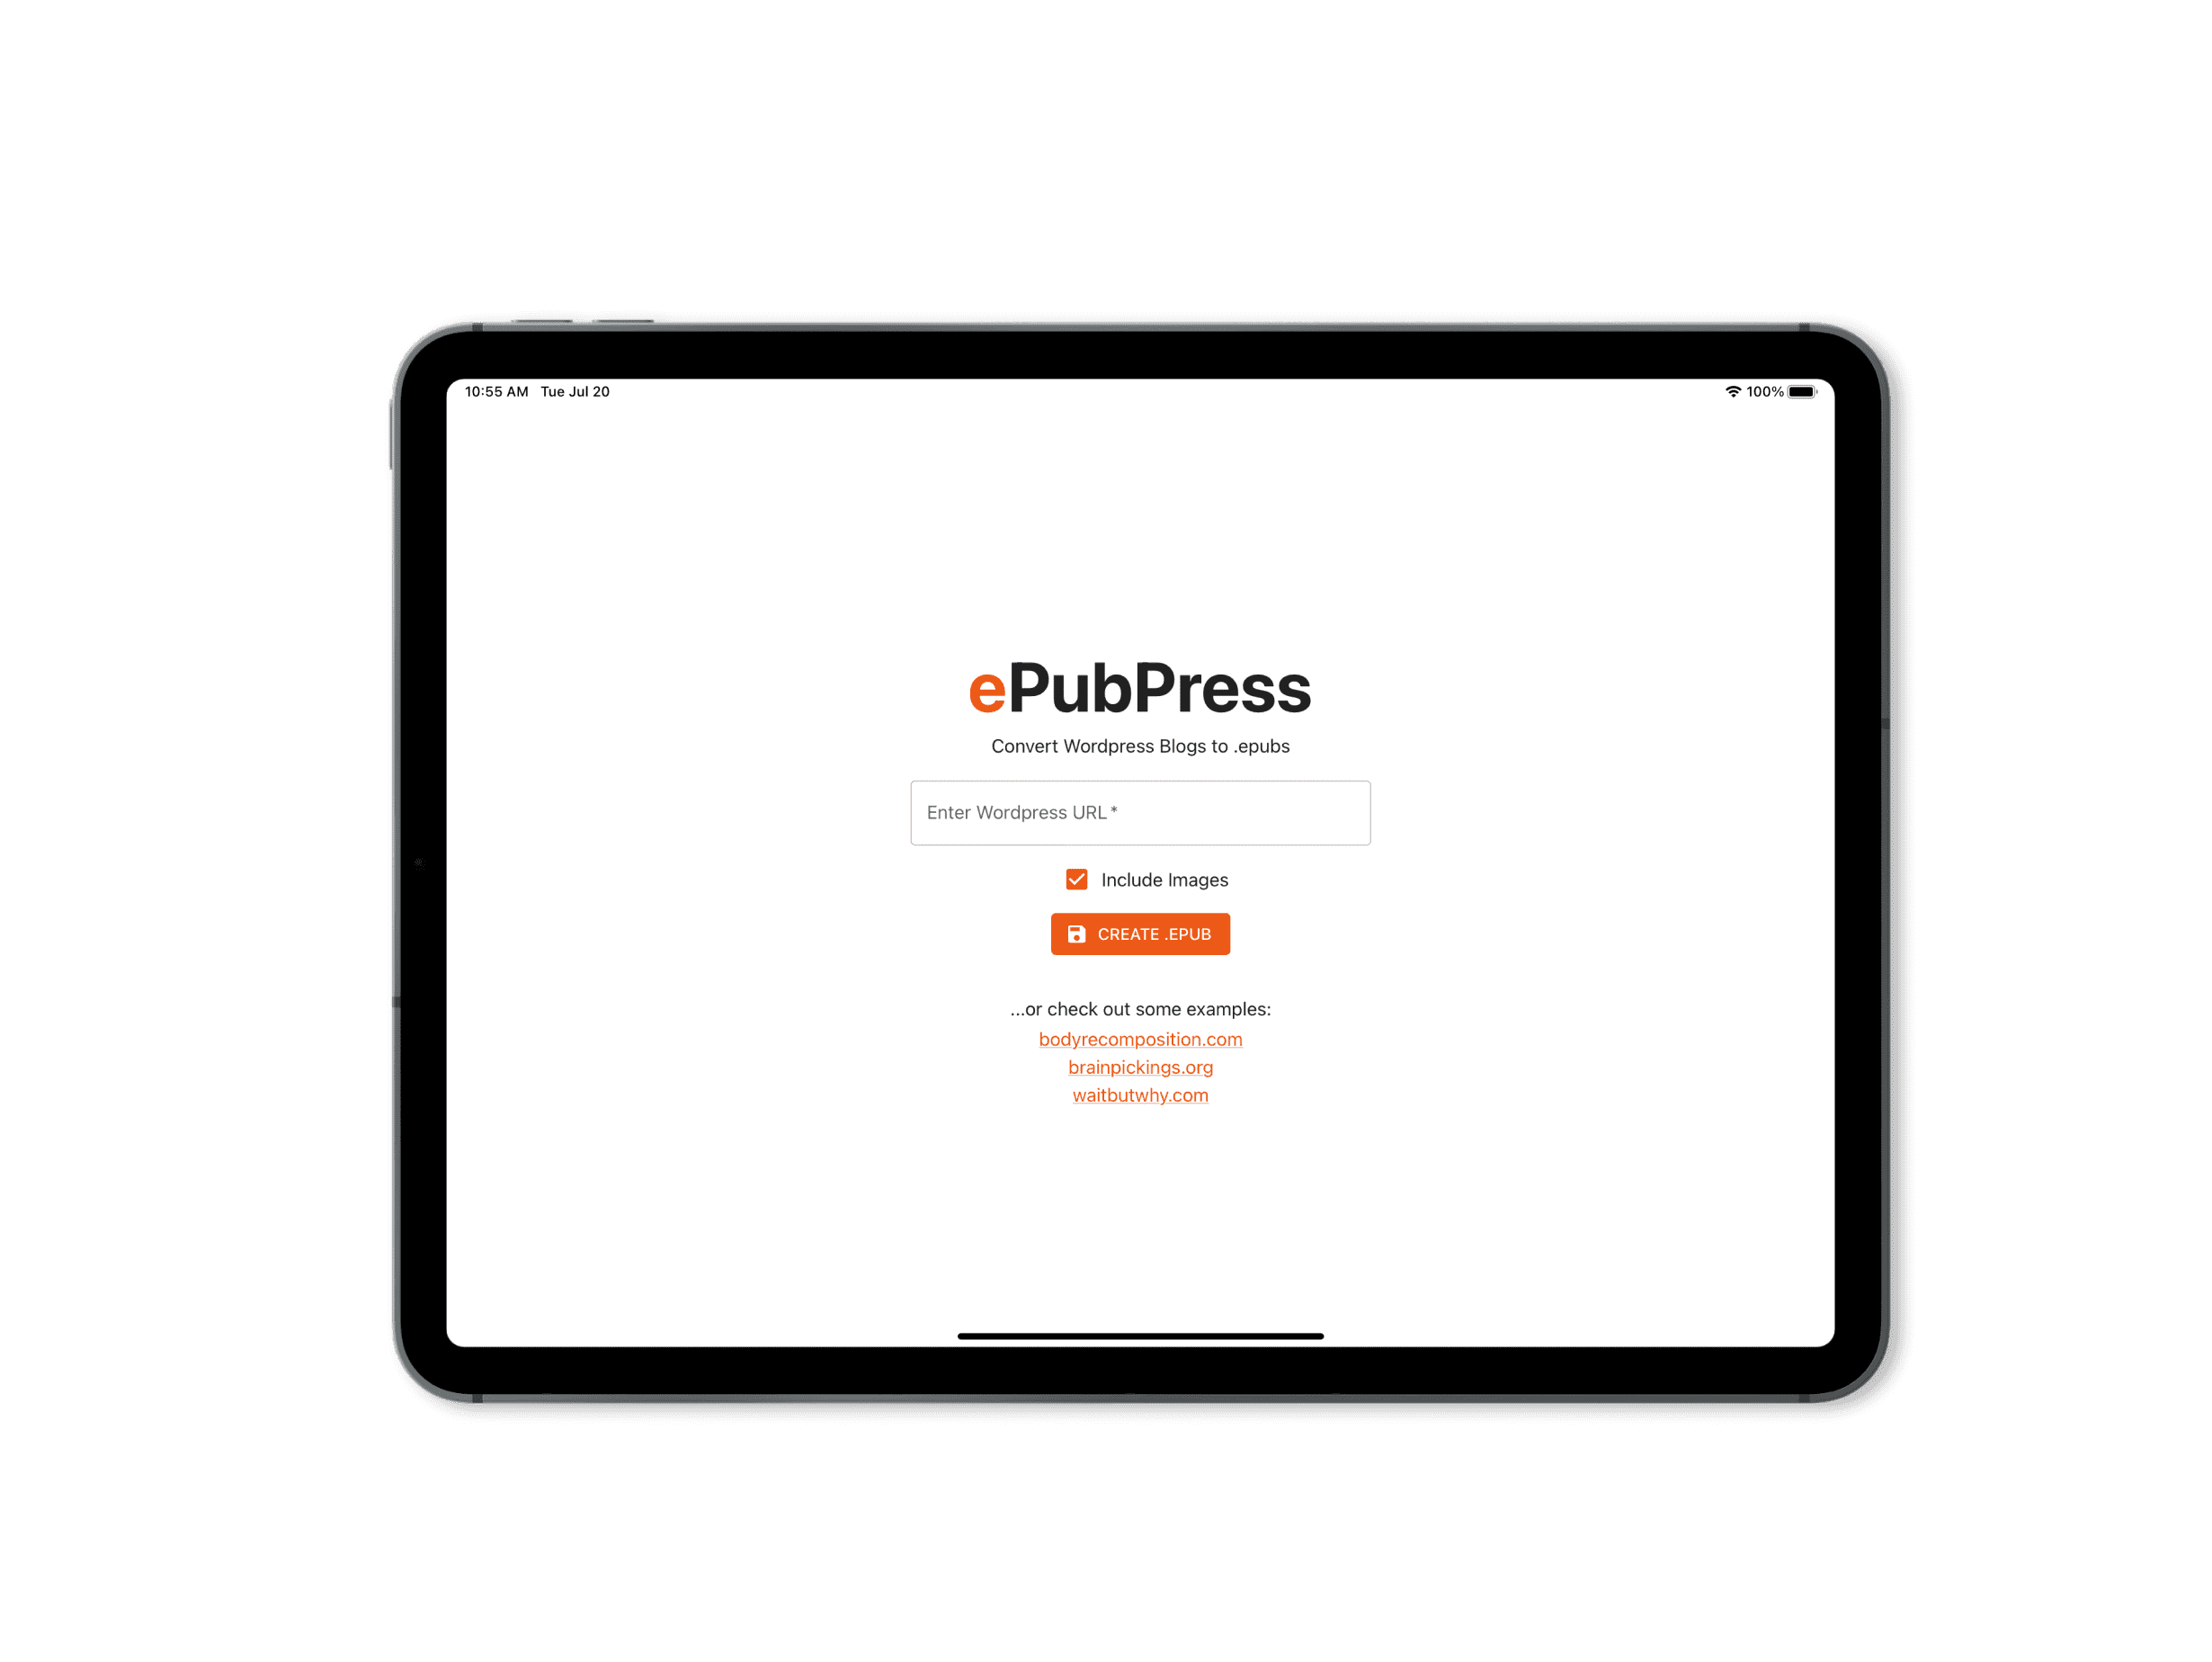 ePubPress